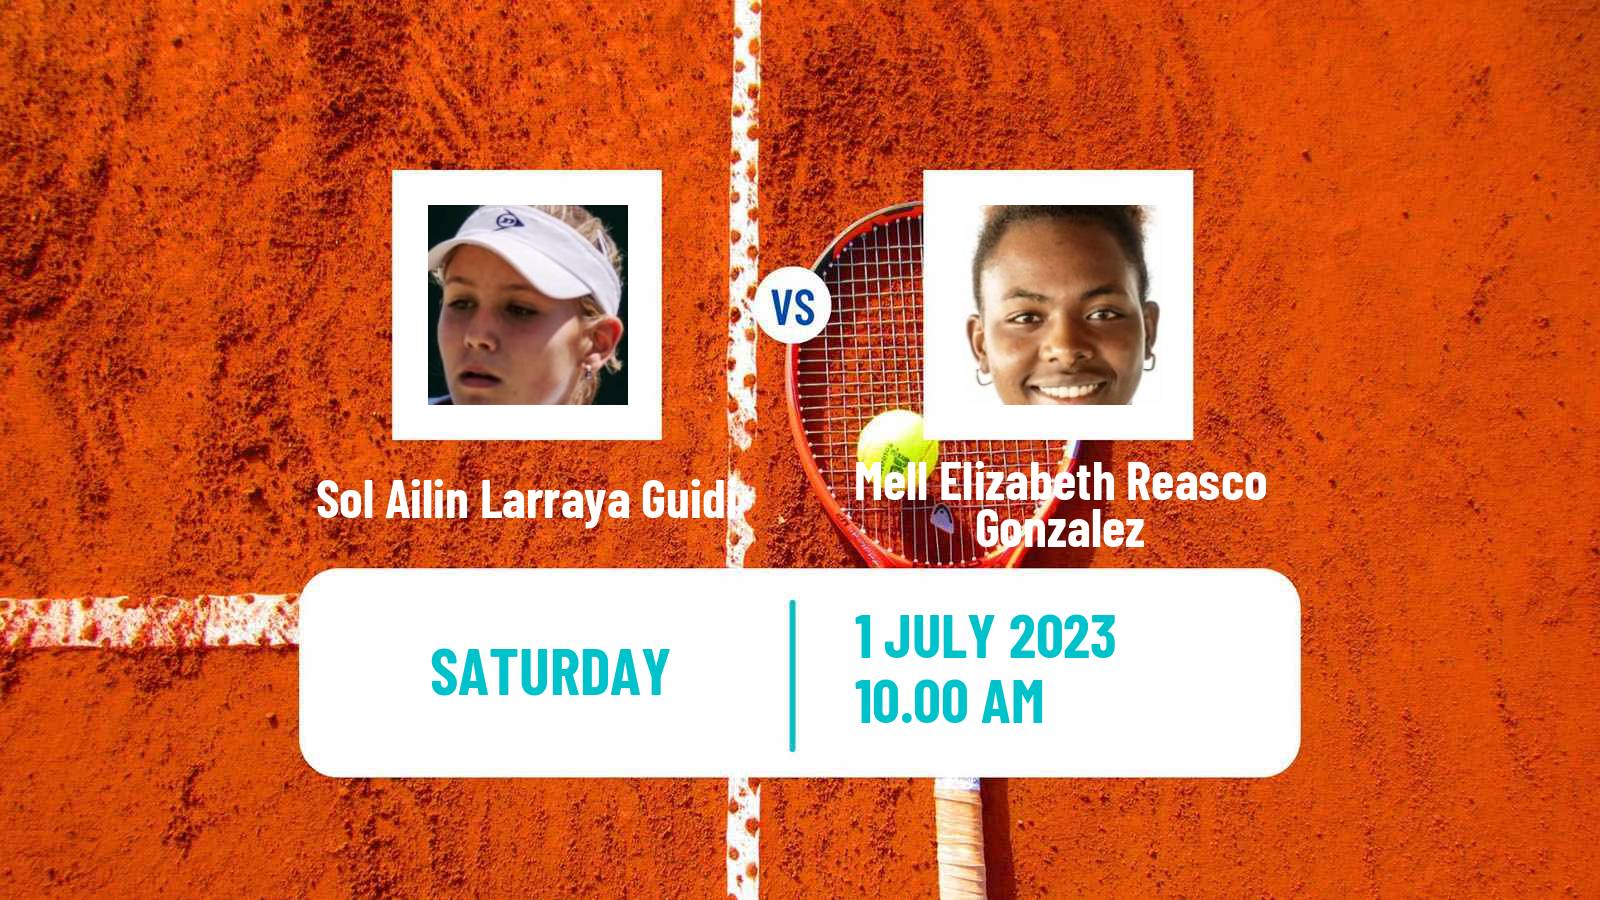 Tennis ITF W15 Rosario Santa Fe Women Sol Ailin Larraya Guidi - Mell Elizabeth Reasco Gonzalez